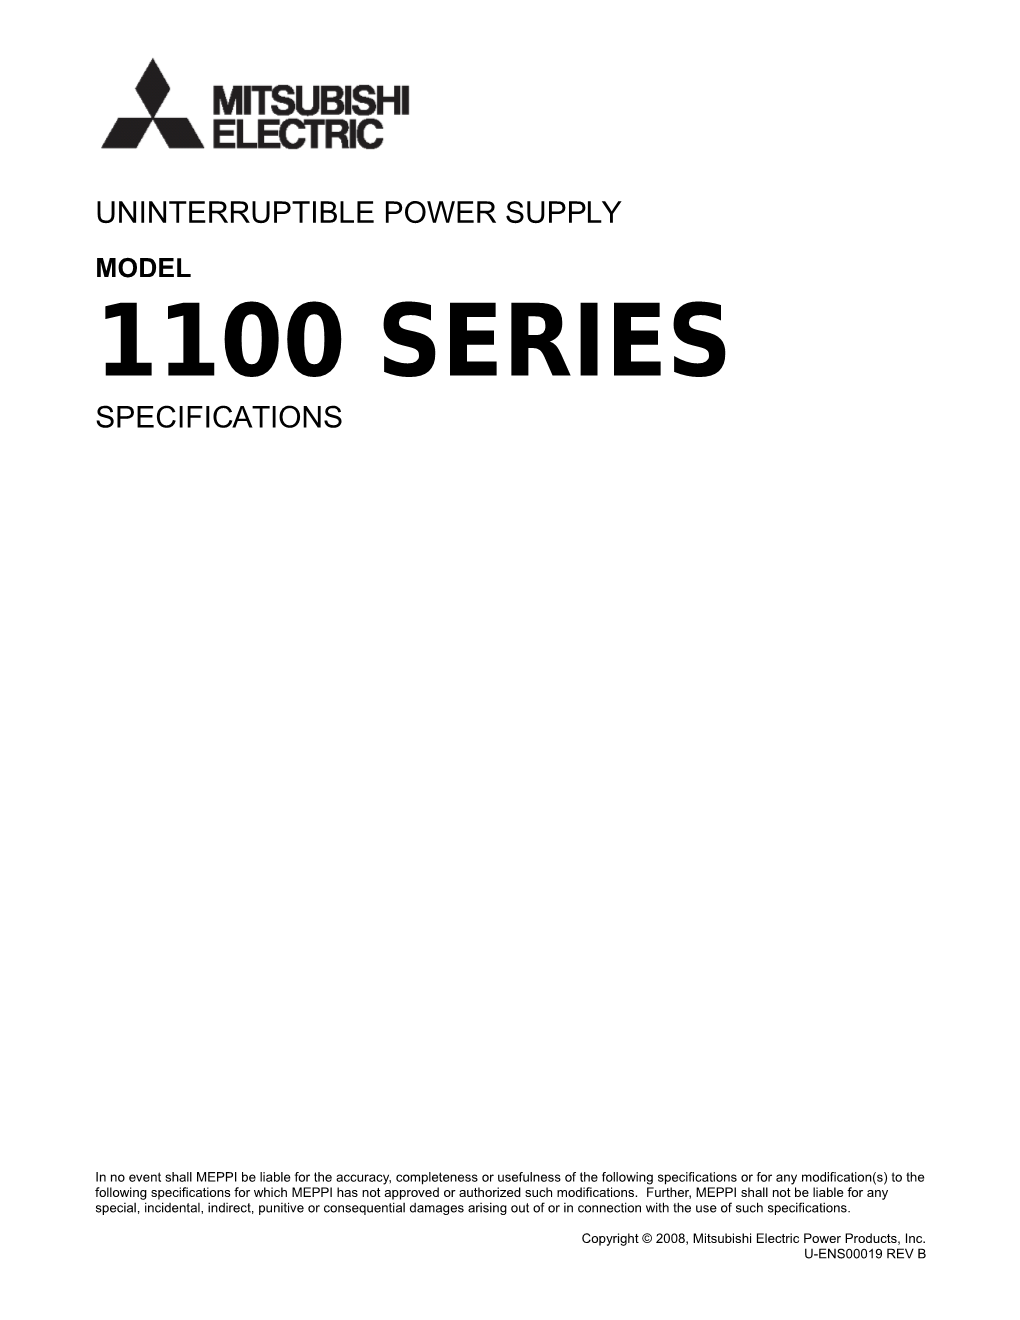 Uninterruptible Power Supply